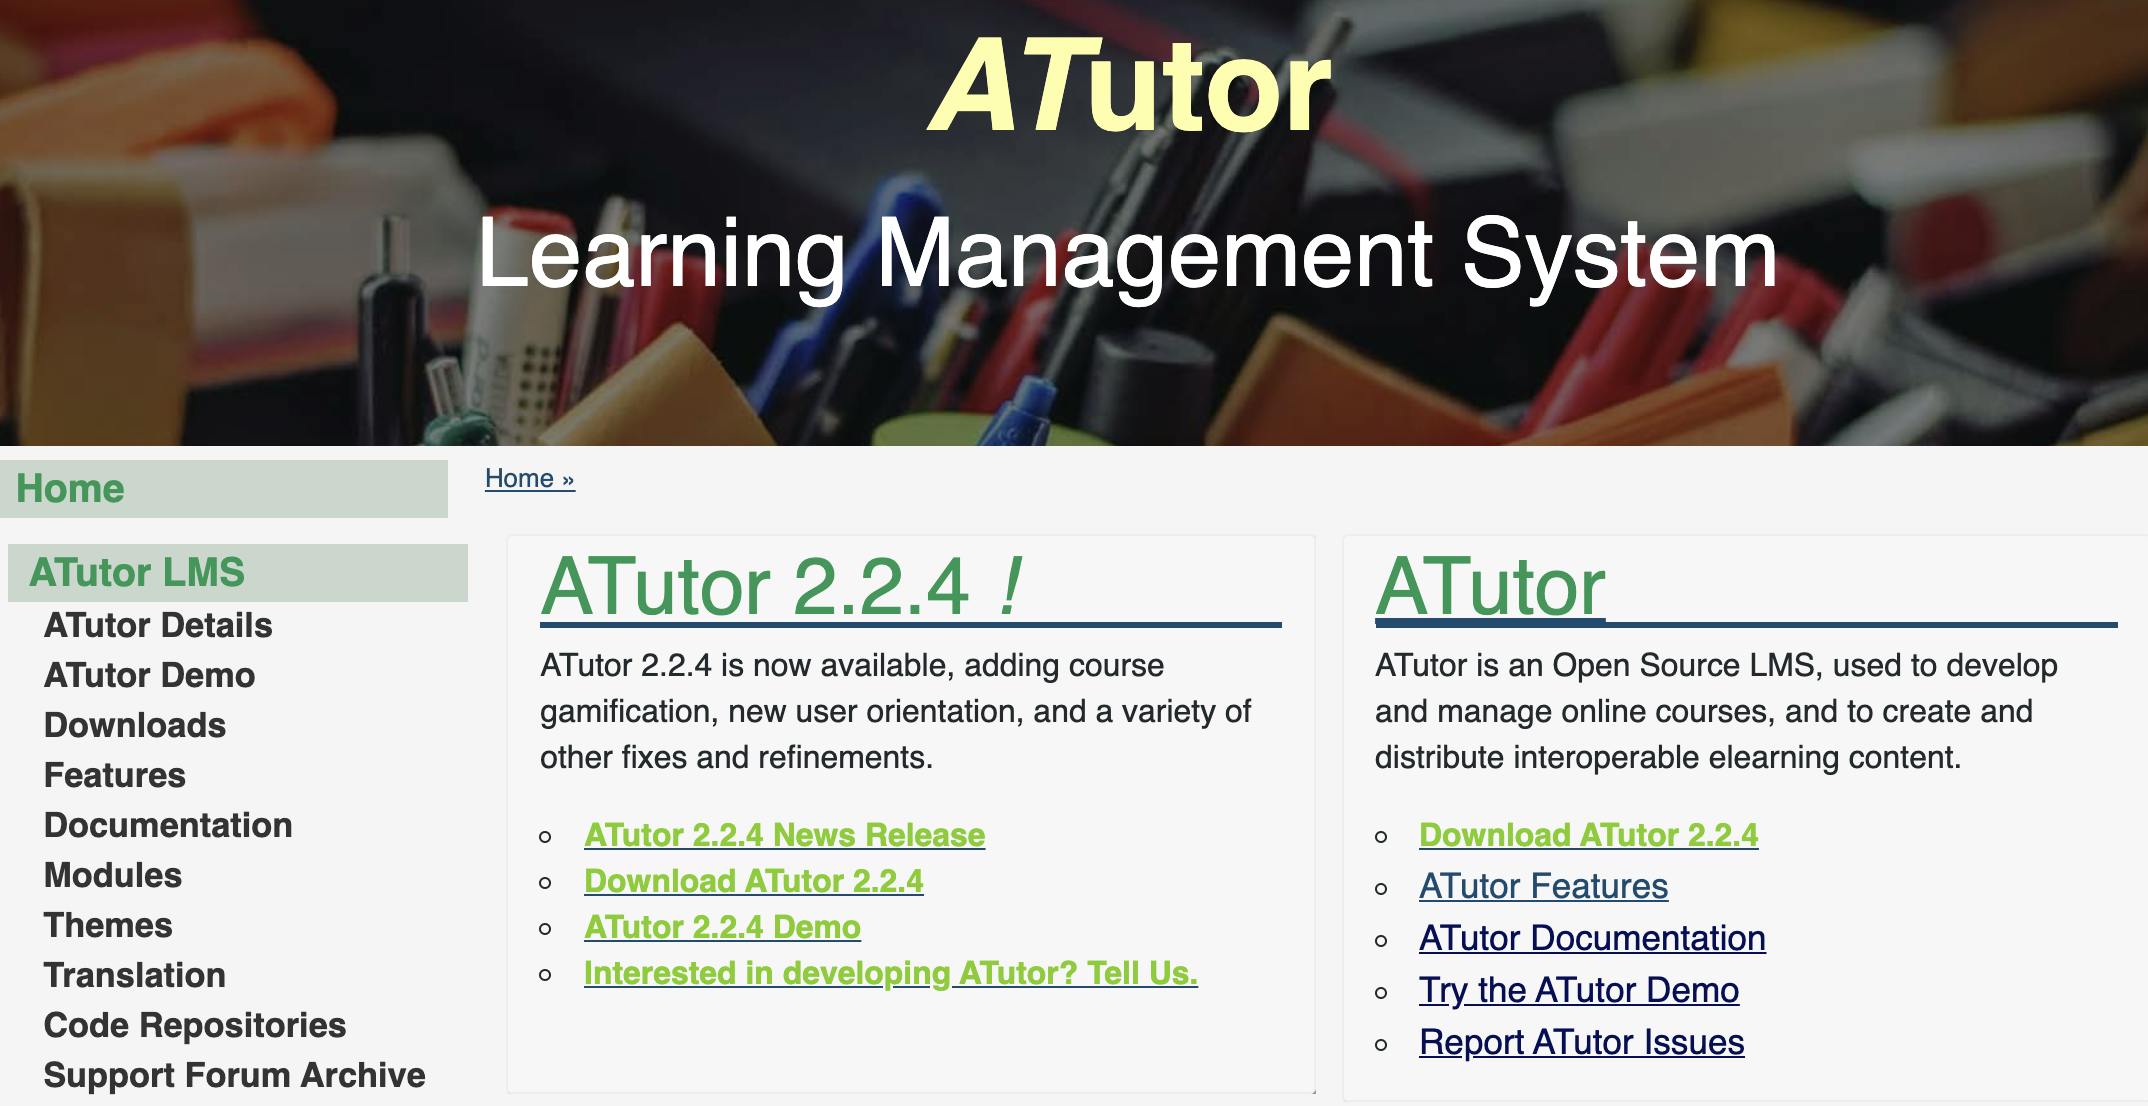 Training Website - AtTutor